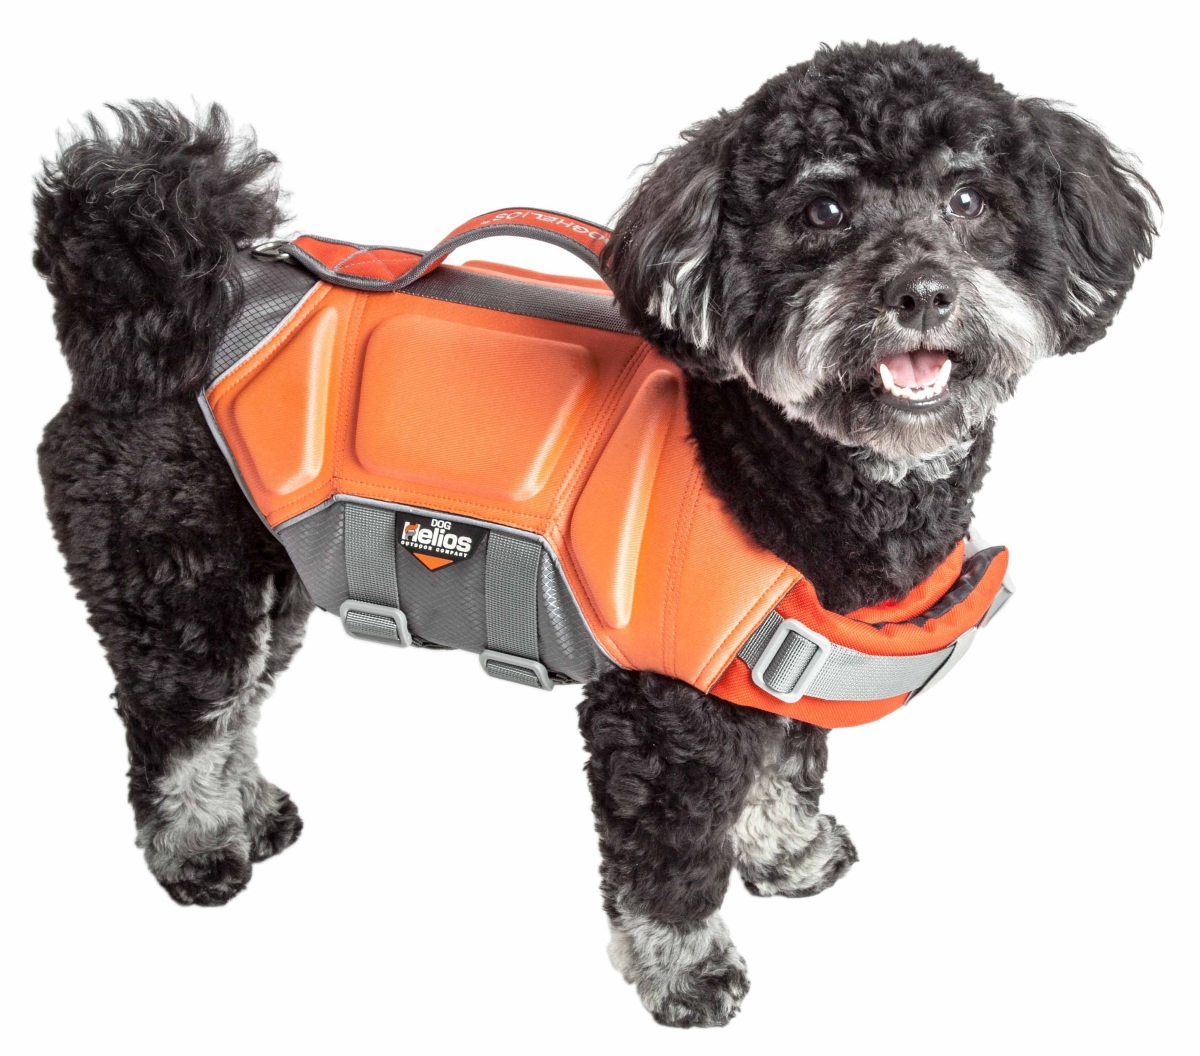 Ha18orxl Tidal Guard Multi-point Strategically-stitched Reflective Pet Dog Life Jacket Vest - Orange, Extra Large